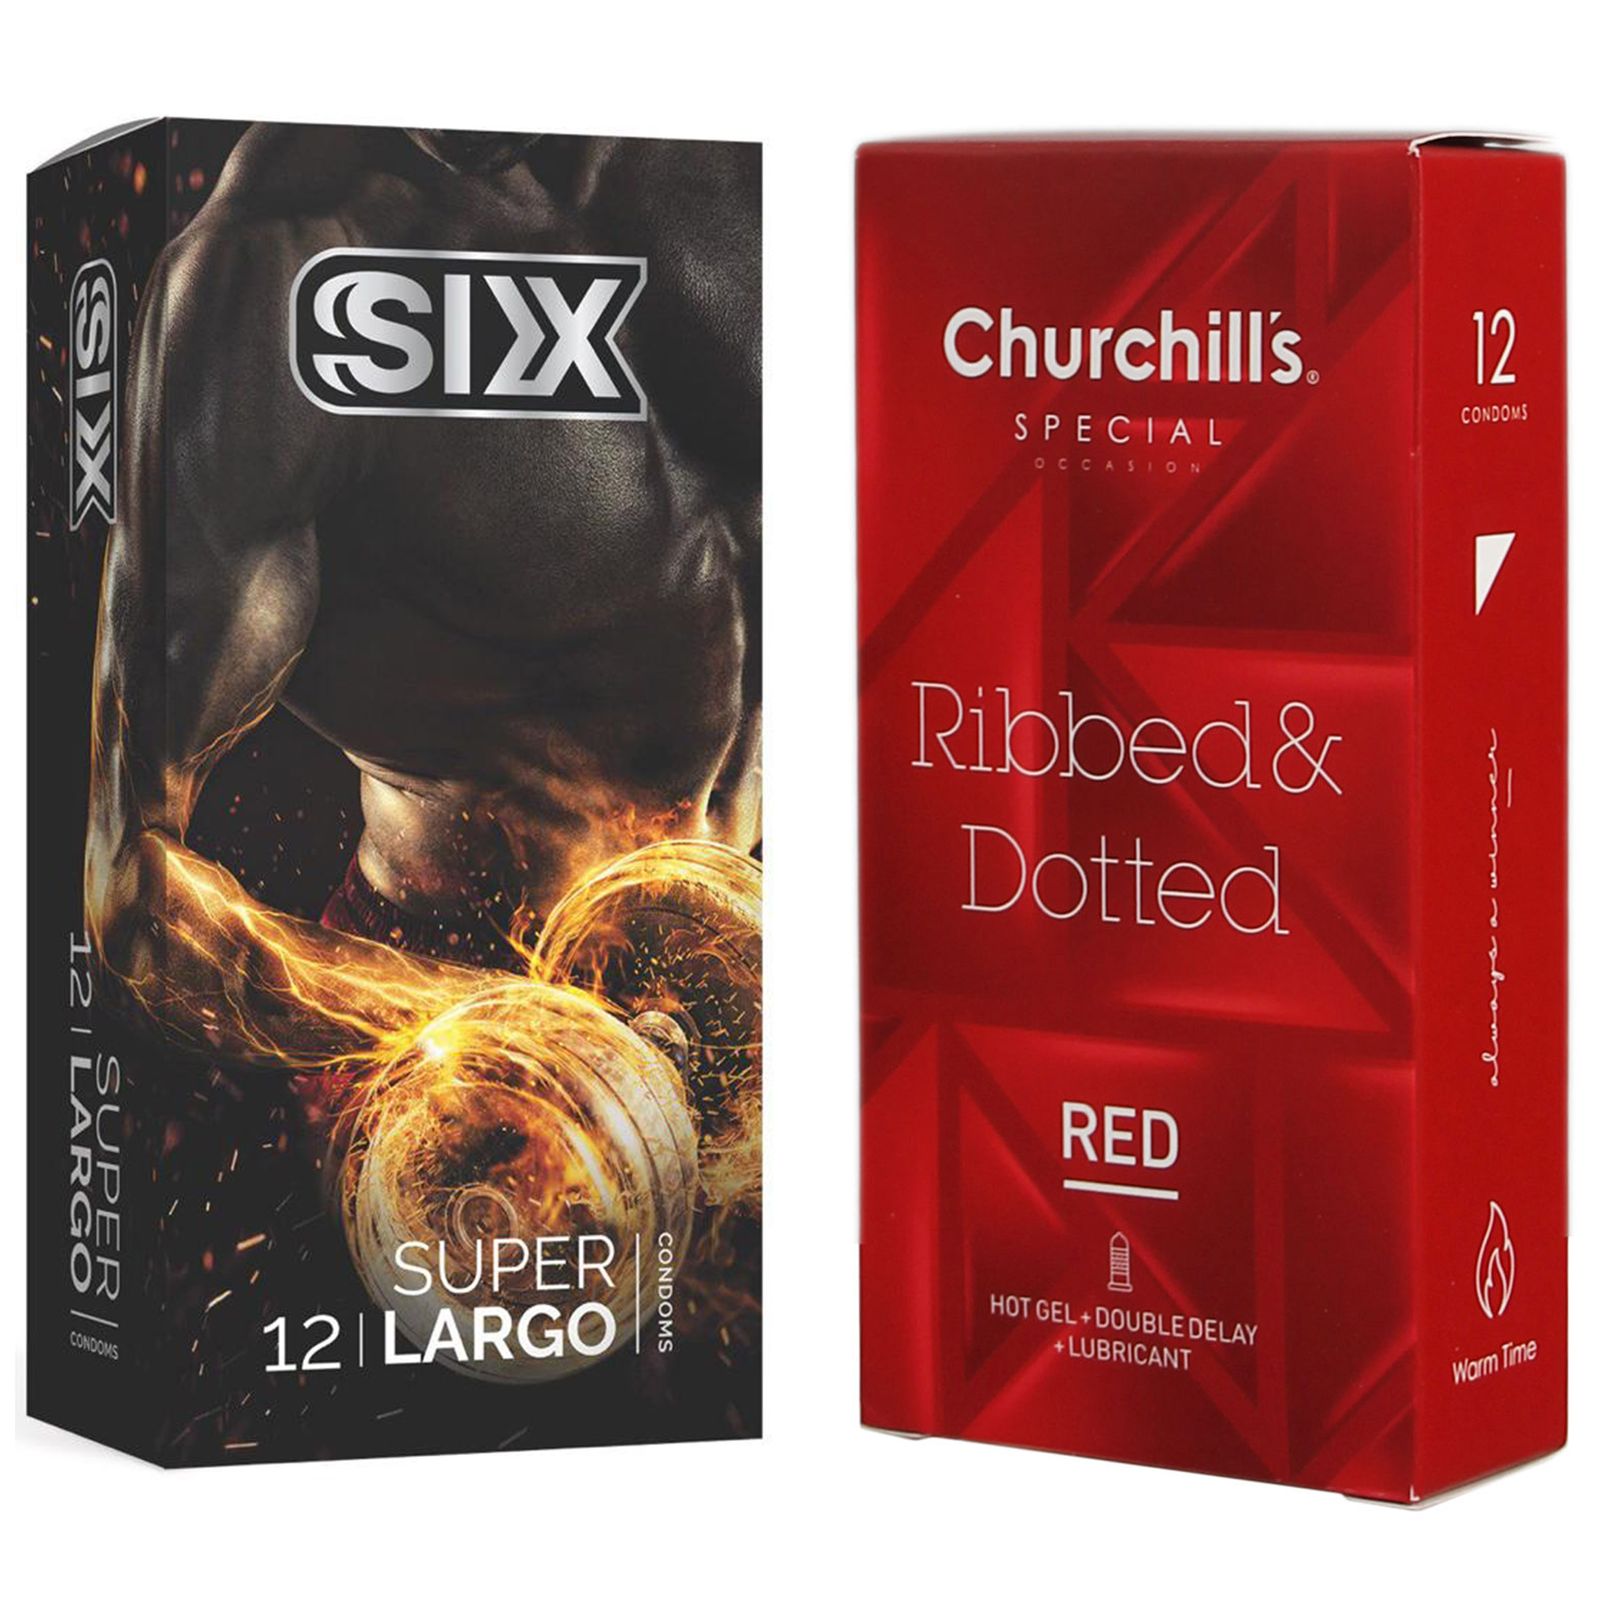 کاندوم چرچیلز مدل Hot Gel بسته 12 عددی به همراه کاندوم سیکس مدل سفت کننده و بزرگ کننده بسته 12 عددی -  - 1